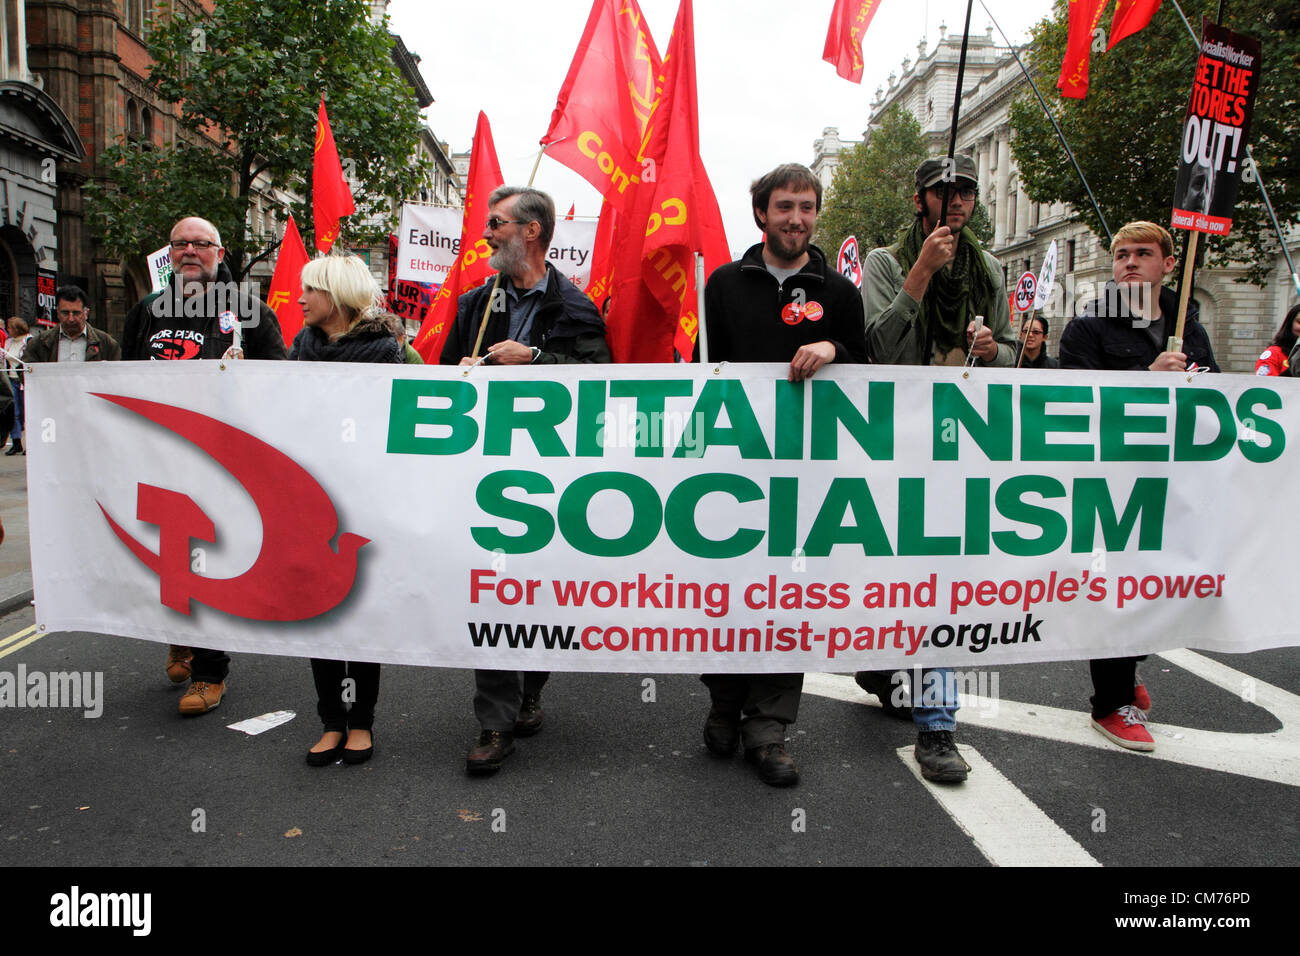 Anhänger der kommunistischen Partei UK marschieren in Whitehall während der TUC gegen Sparpolitik Marsch. Stockfoto